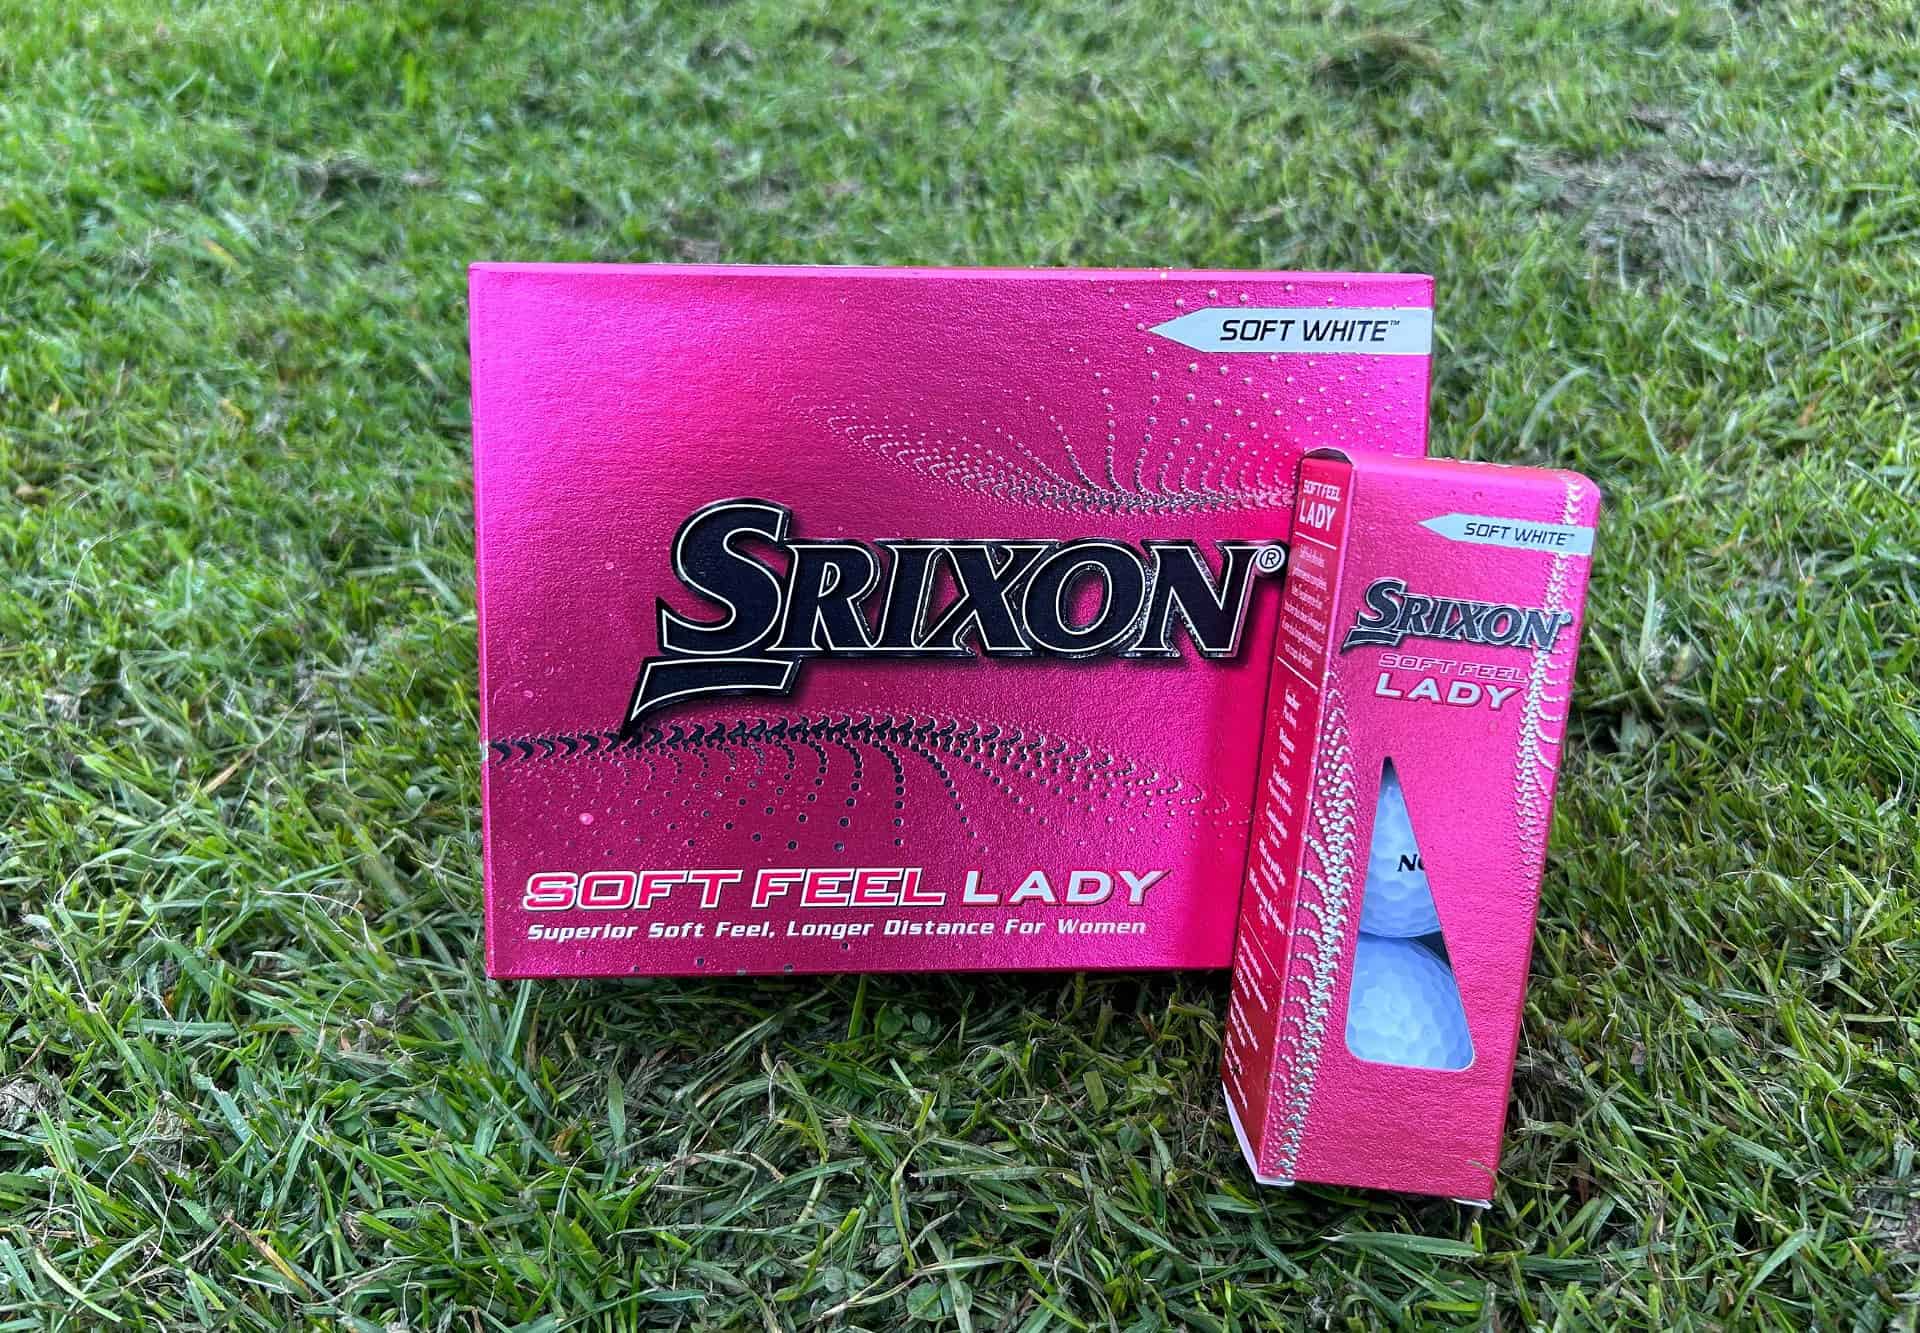 Srixon Soft Feel Lady golf ball review